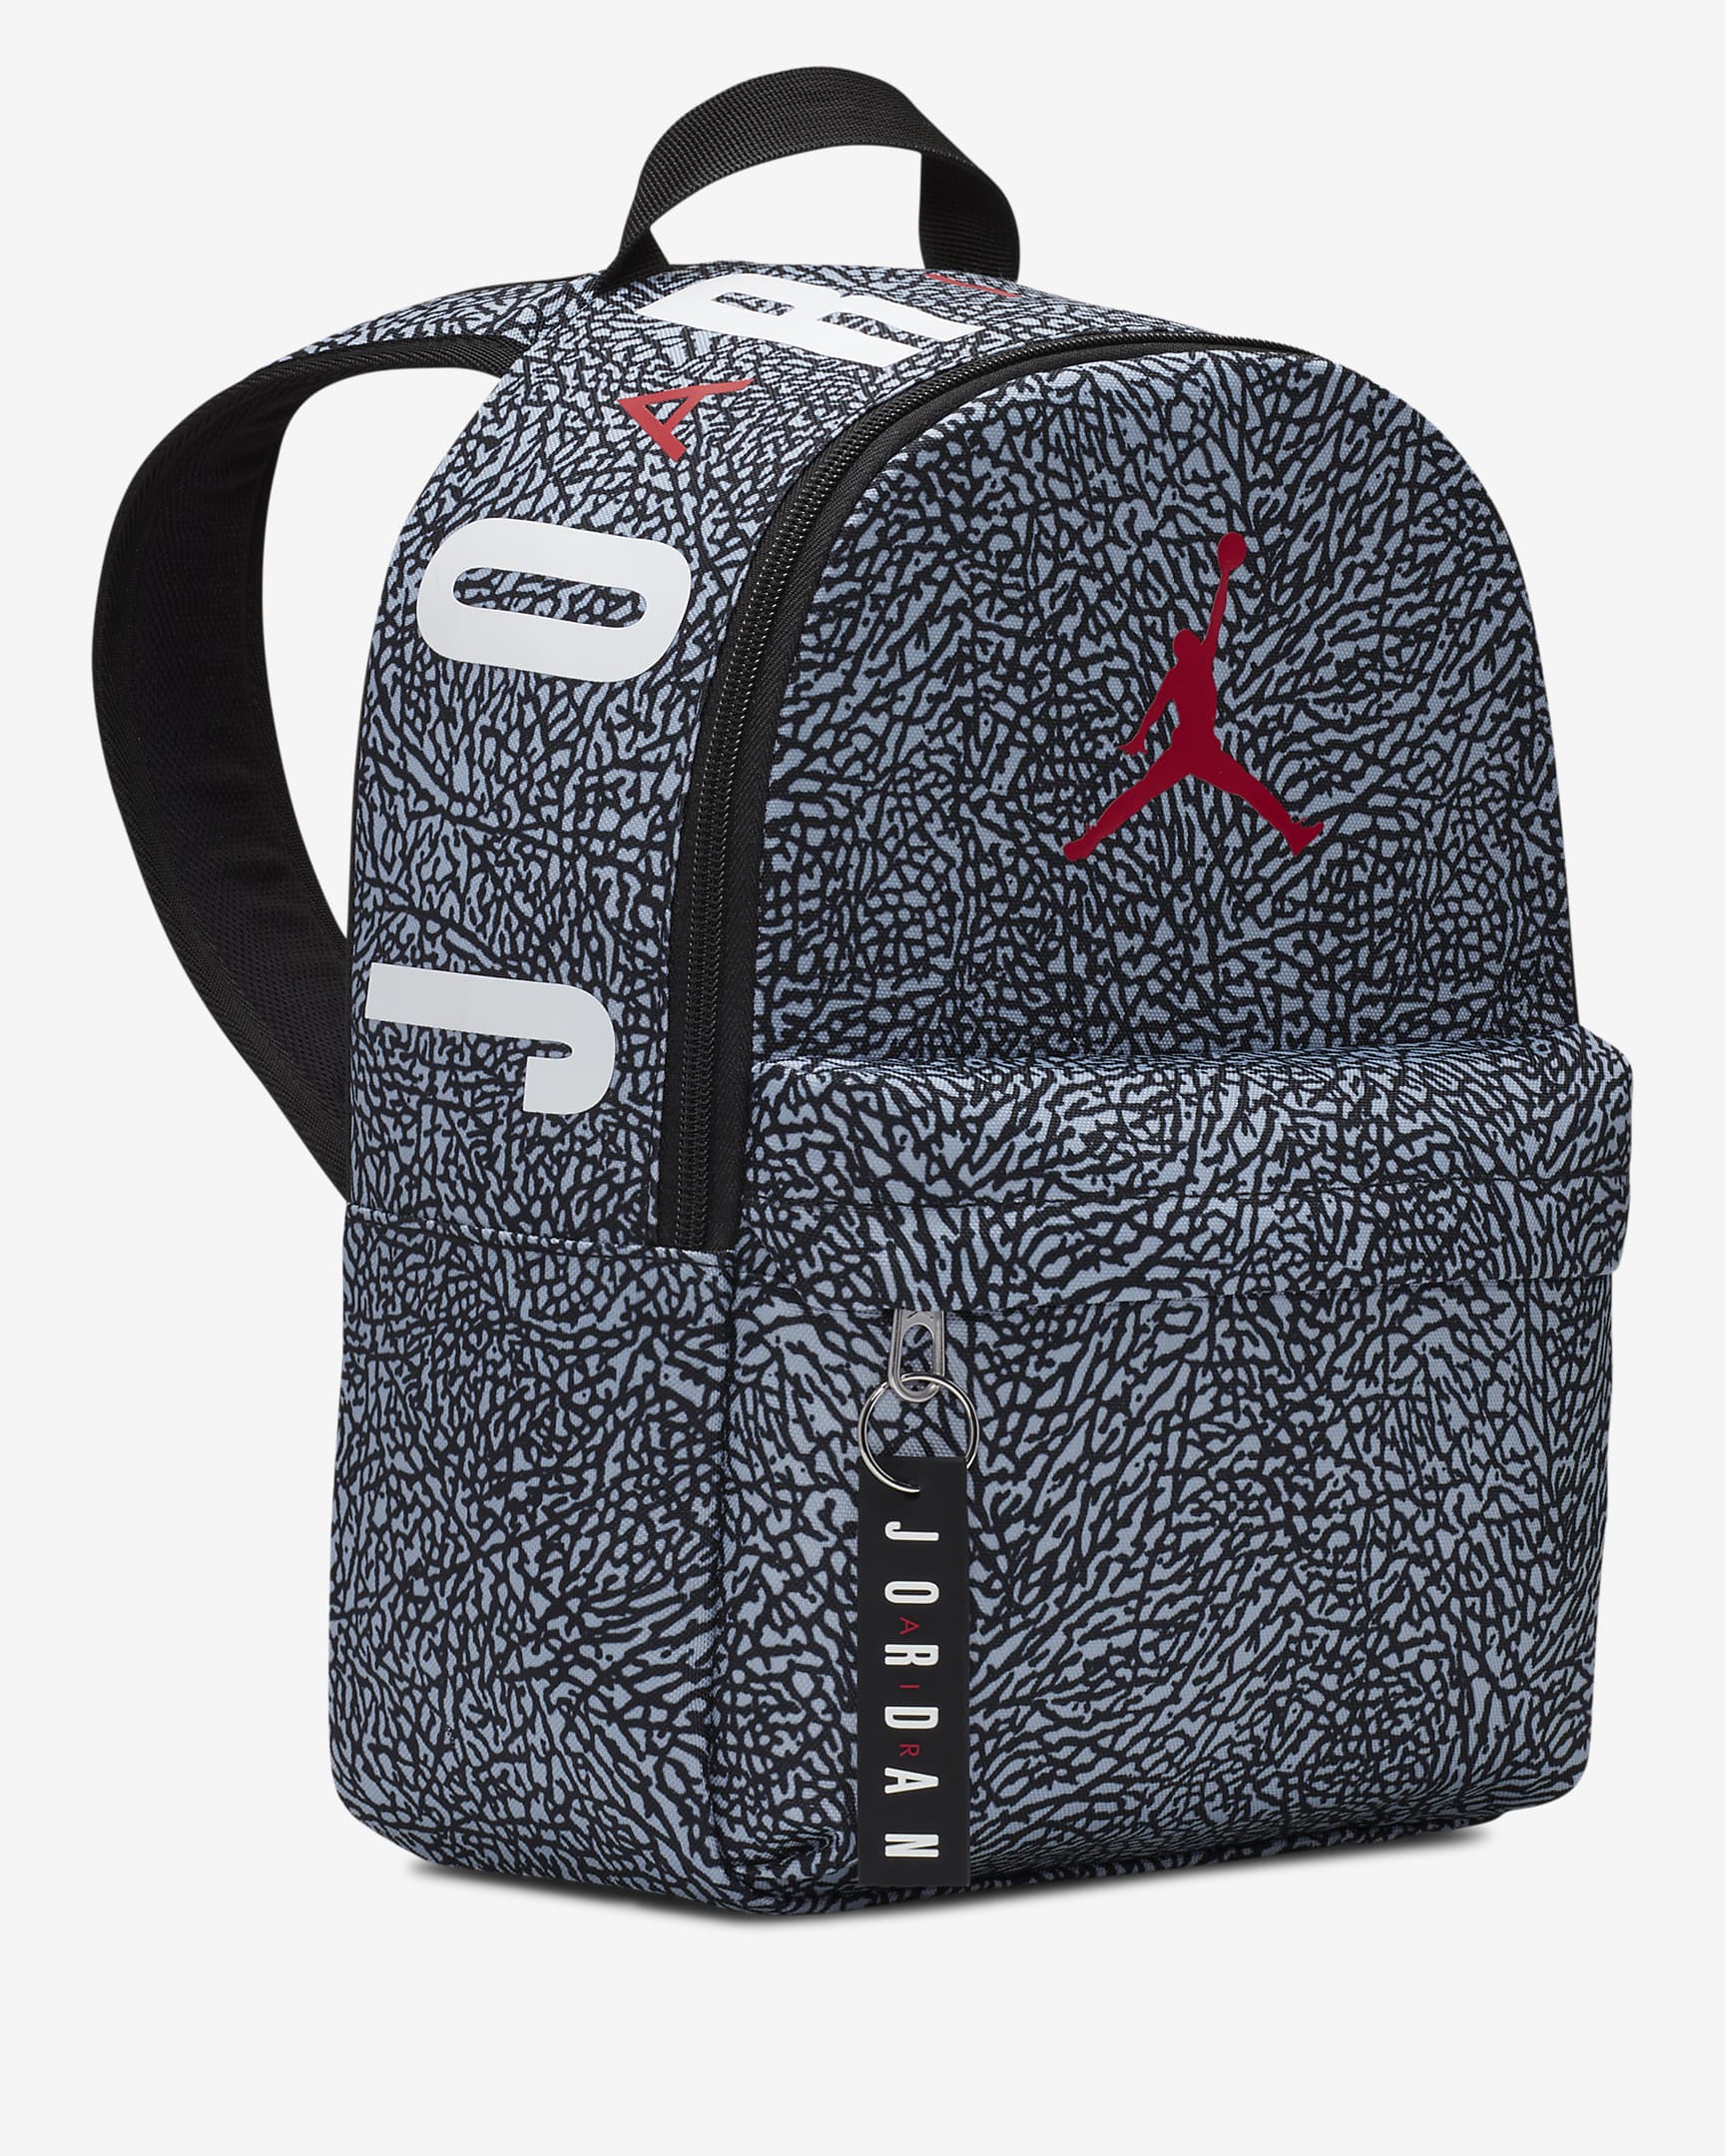 Jordan Air Mini Backpack - 7A0654